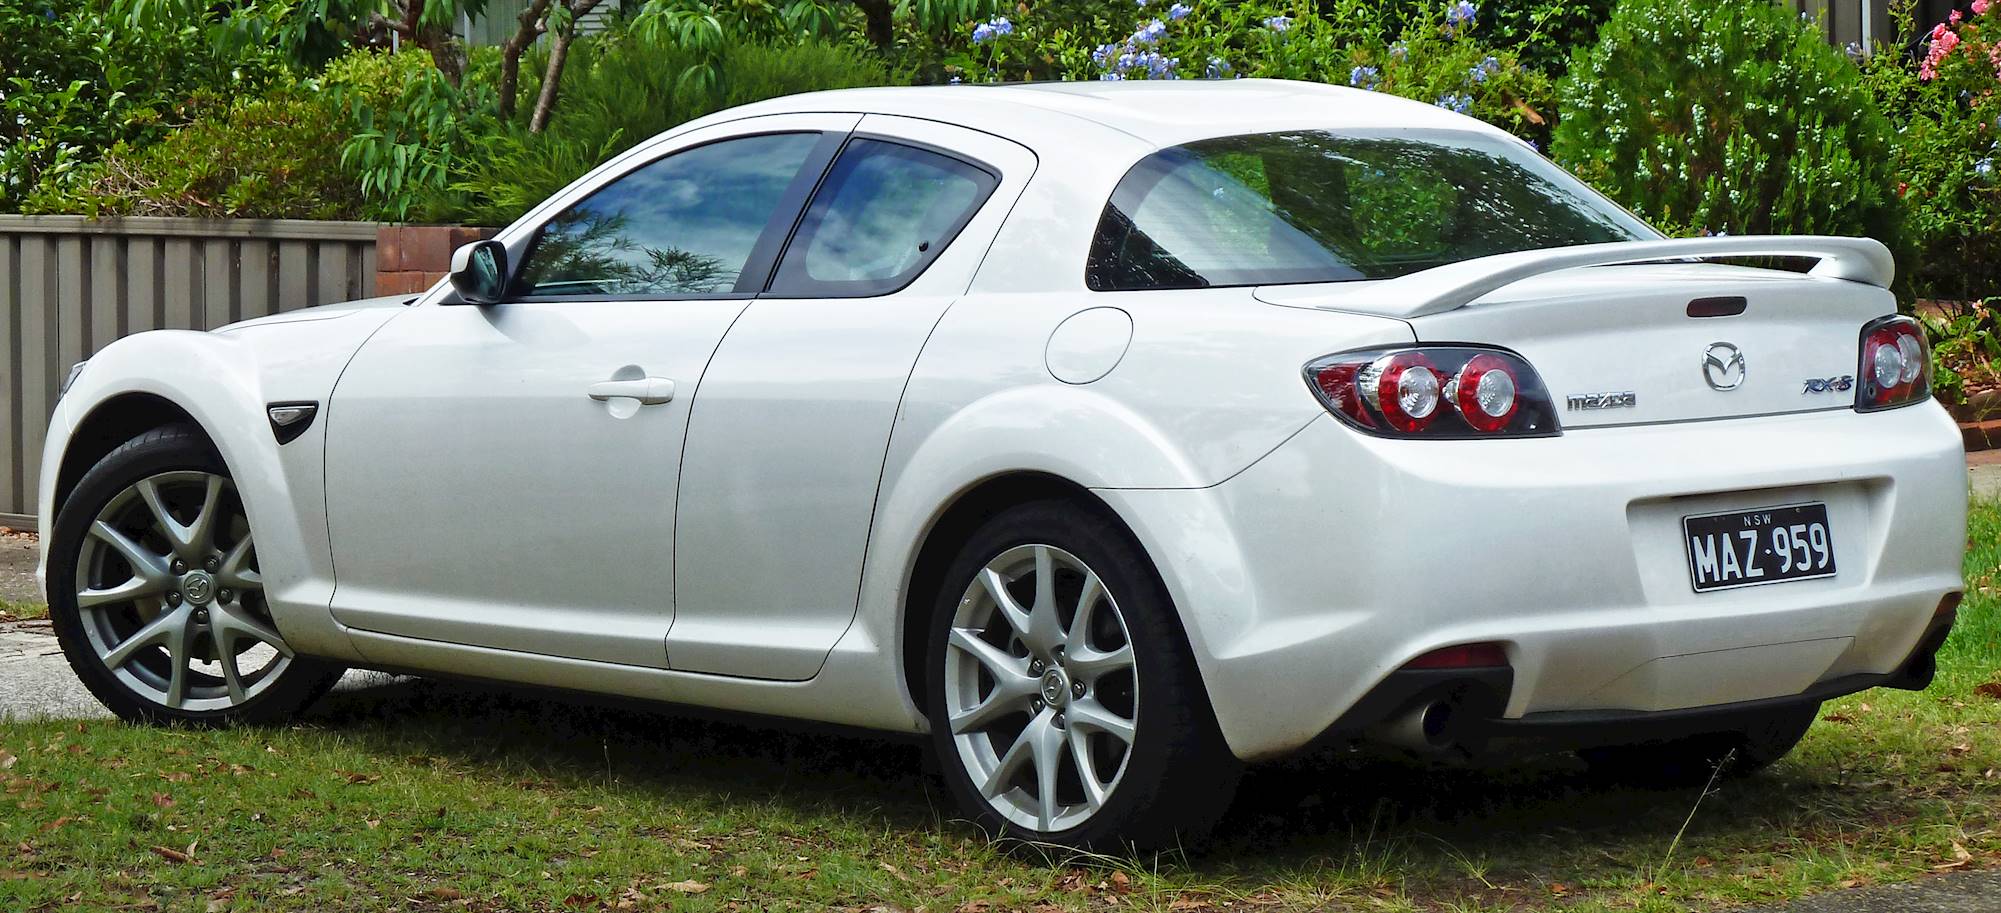 2008 Mazda RX-8 Grand Touring - Coupe 1.3L auto